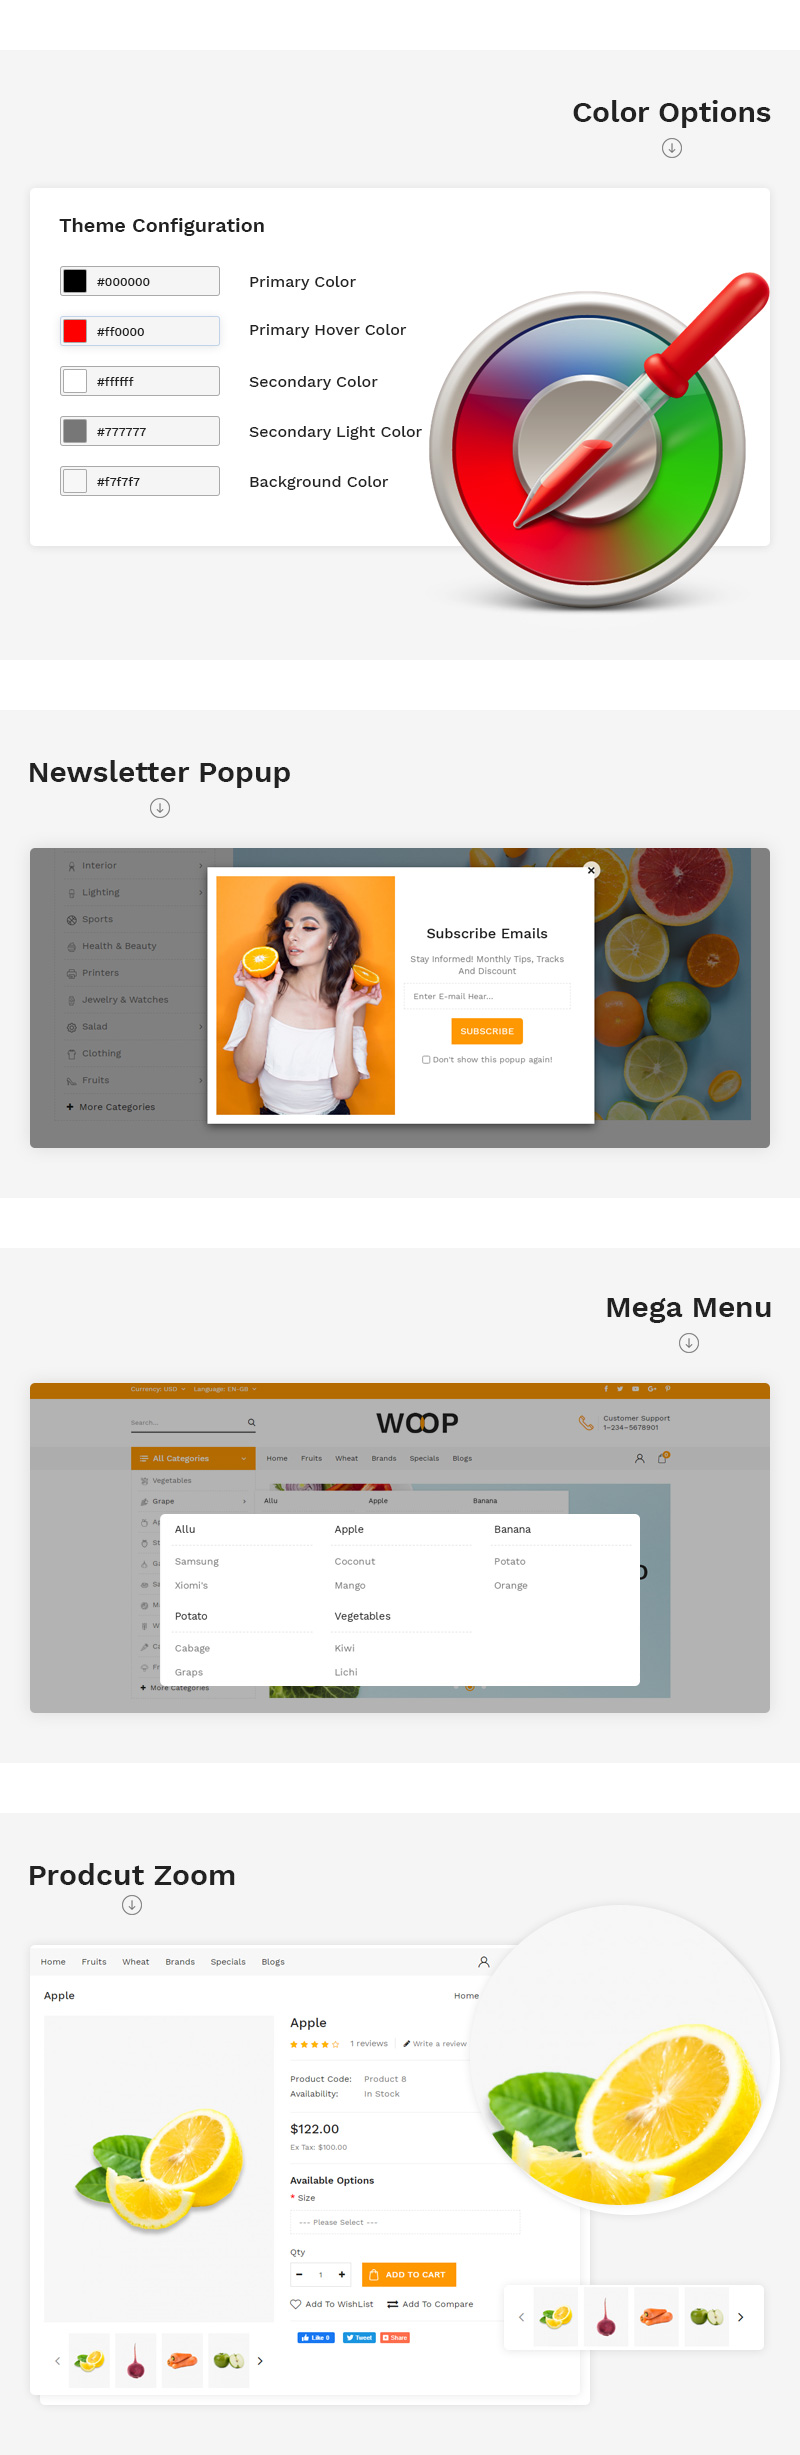 woop-features-3.jpg